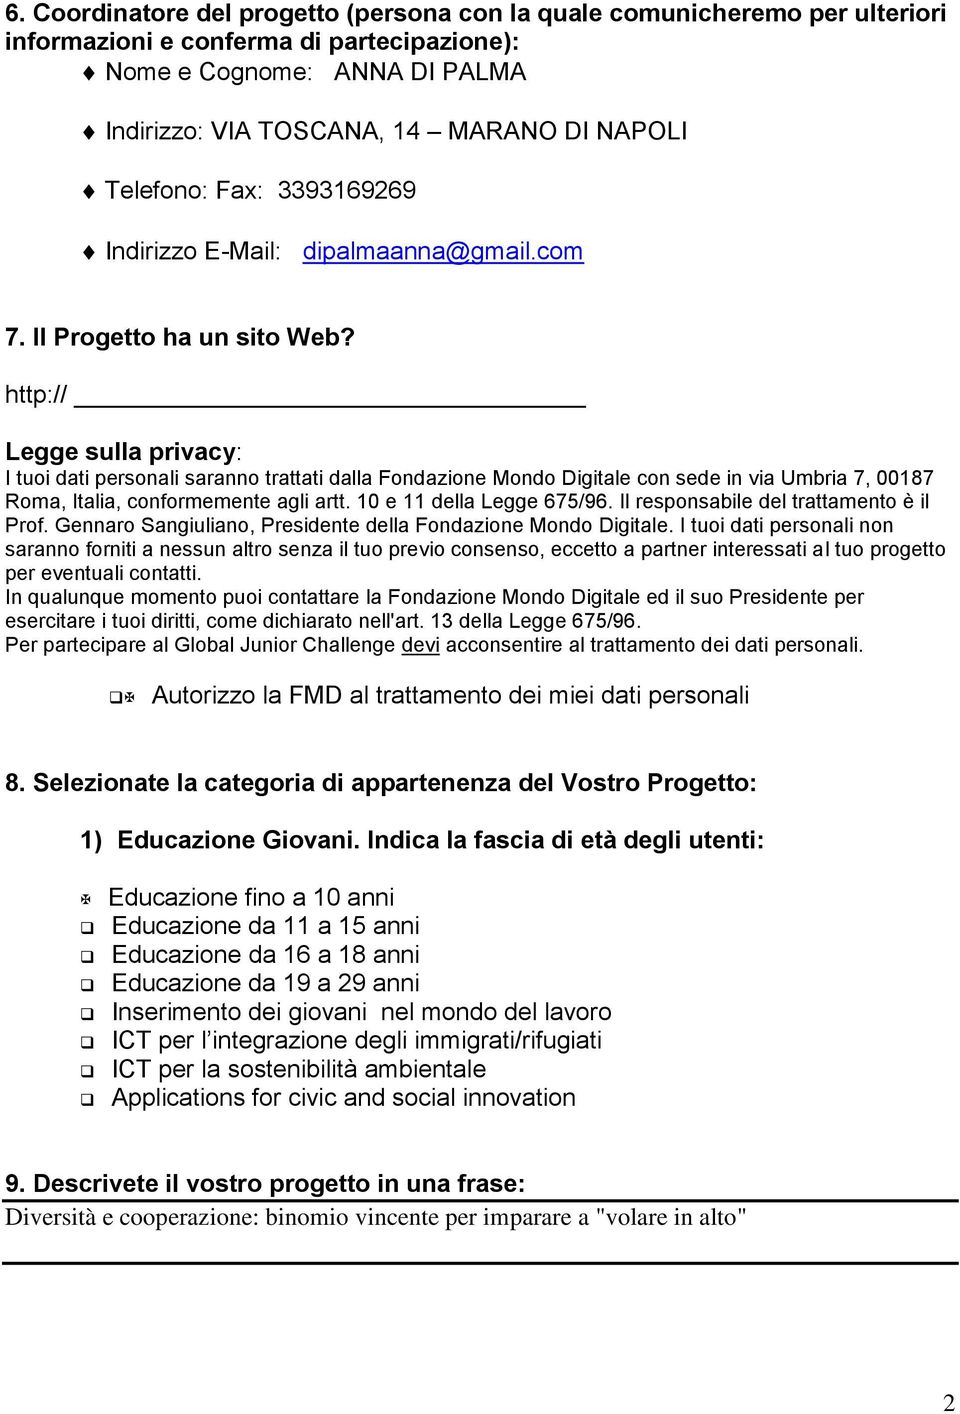 http:// Legge sulla privacy: I tuoi dati personali saranno trattati dalla Fondazione Mondo Digitale con sede in via Umbria 7, 00187 Roma, Italia, conformemente agli artt. 10 e 11 della Legge 675/96.